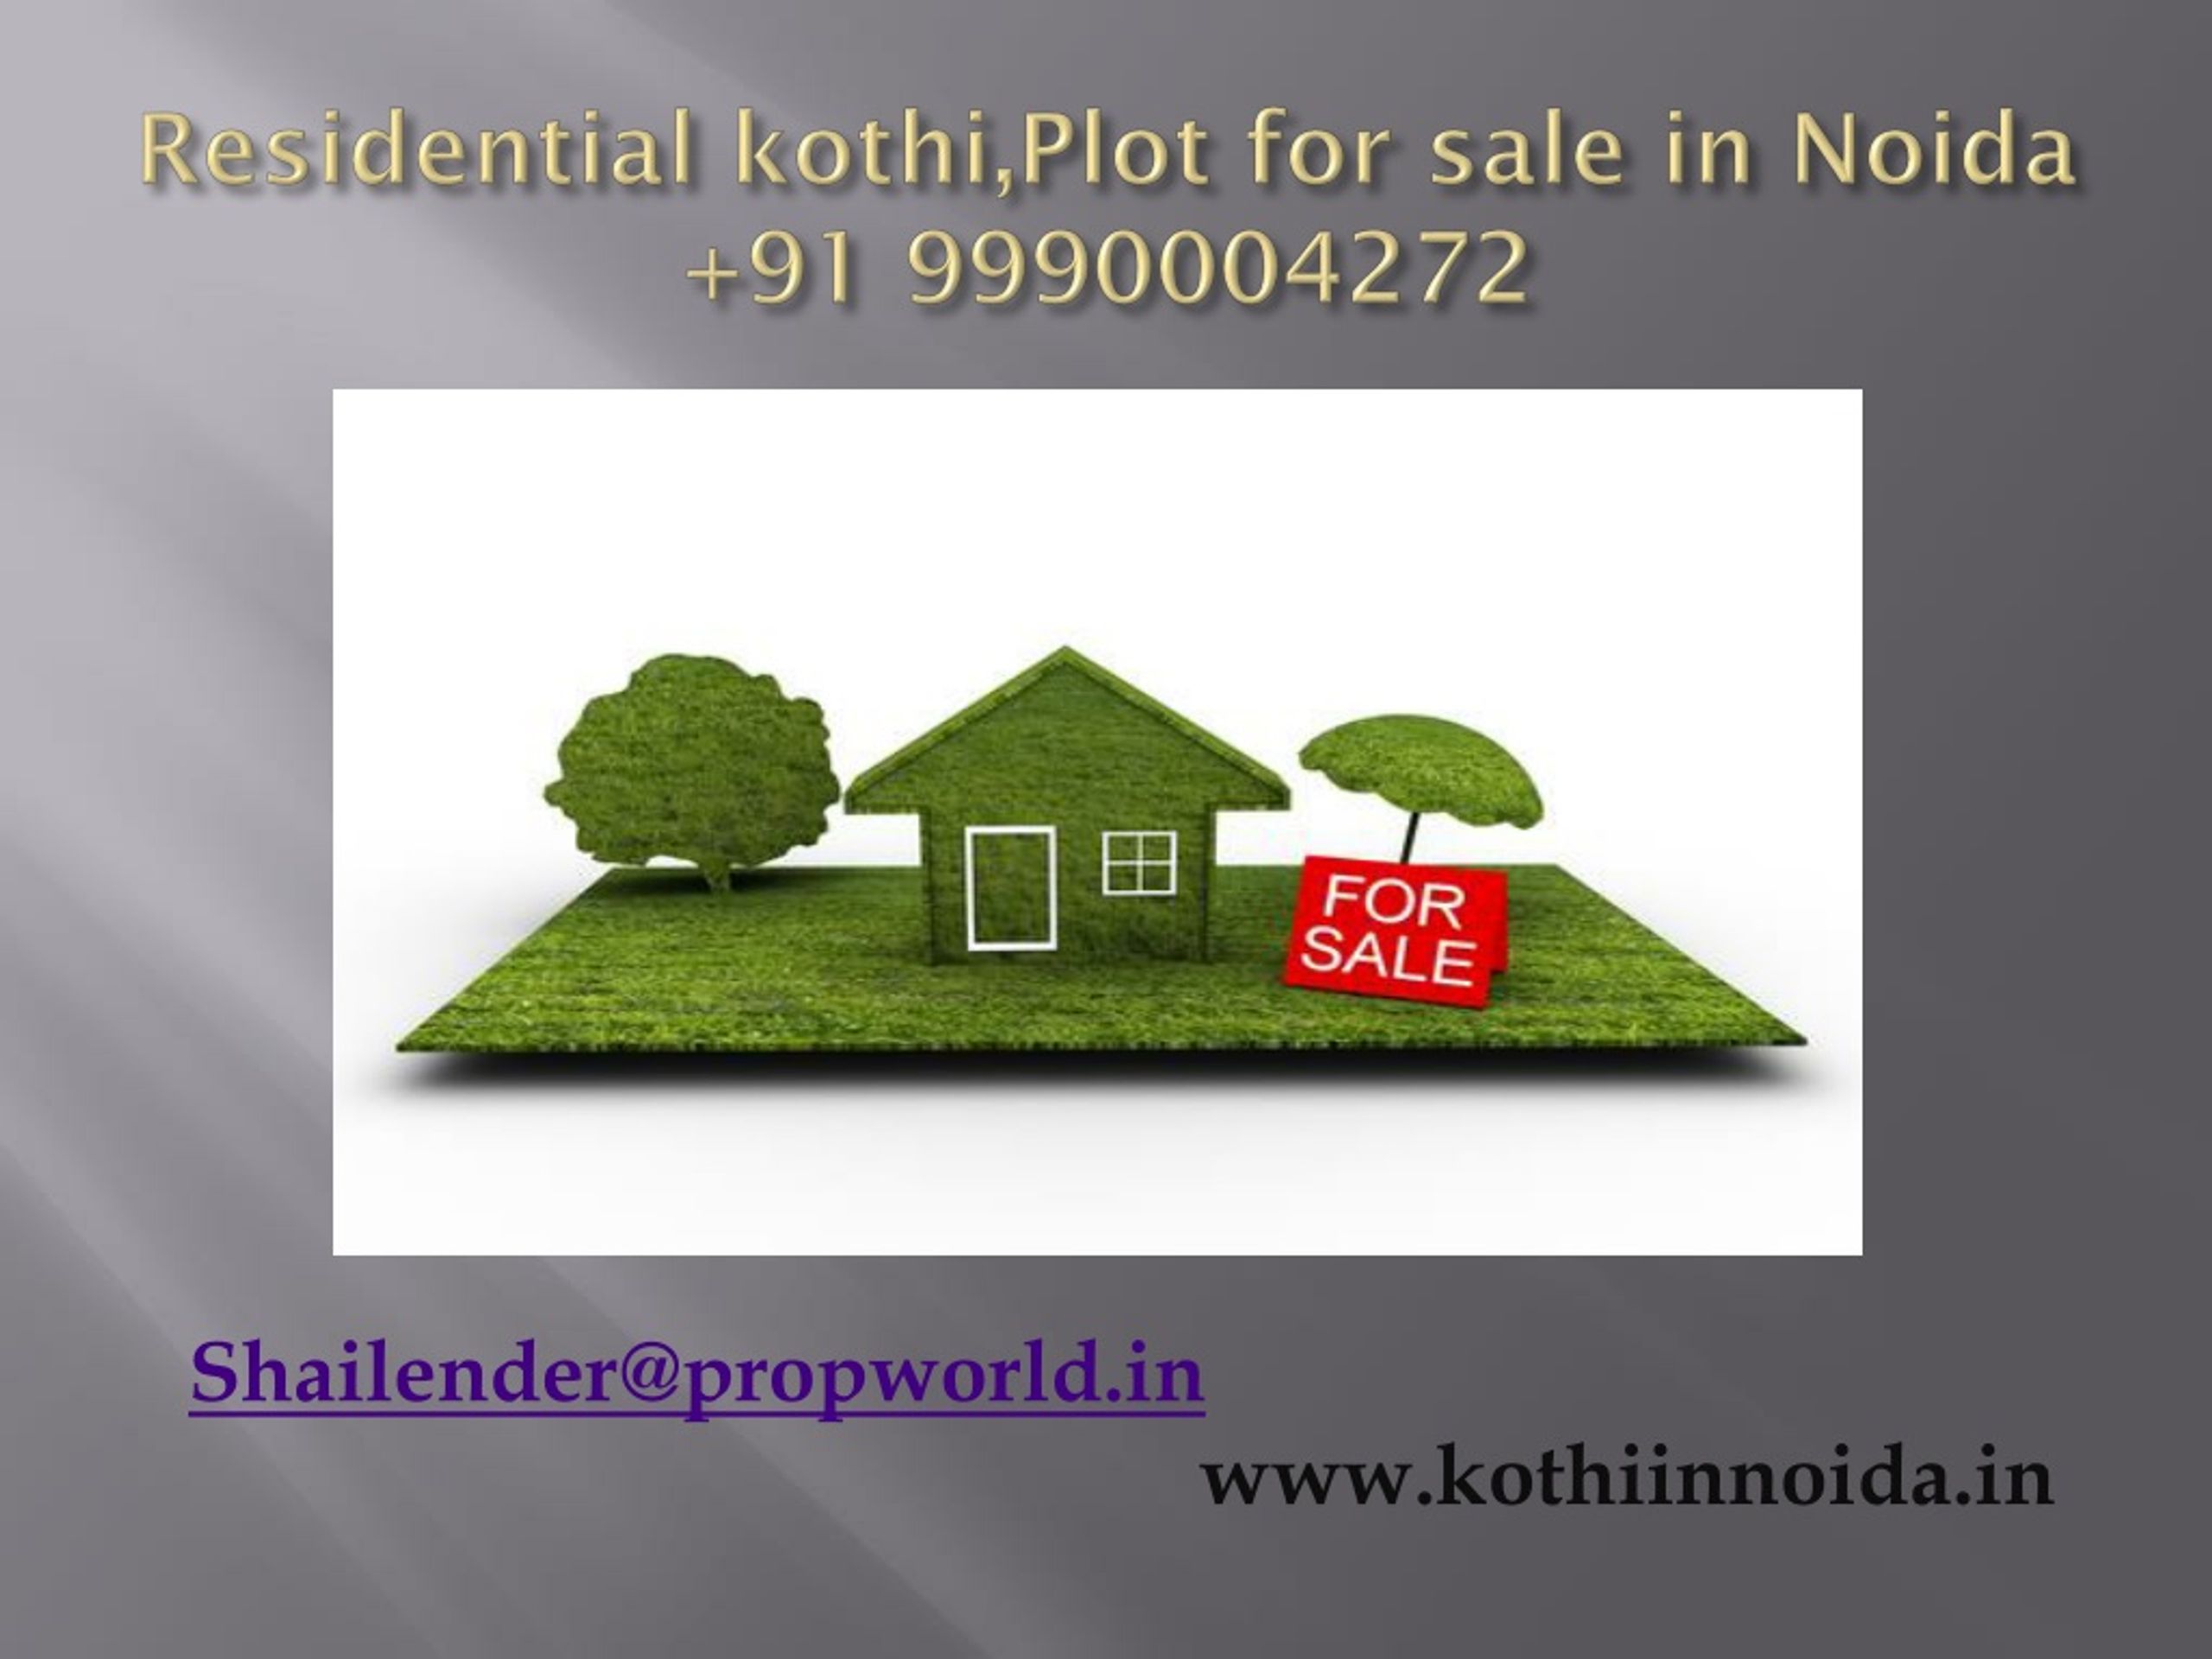 PPT - Brand New Residential Kothi in Noida 9990004272 PowerPoint ...